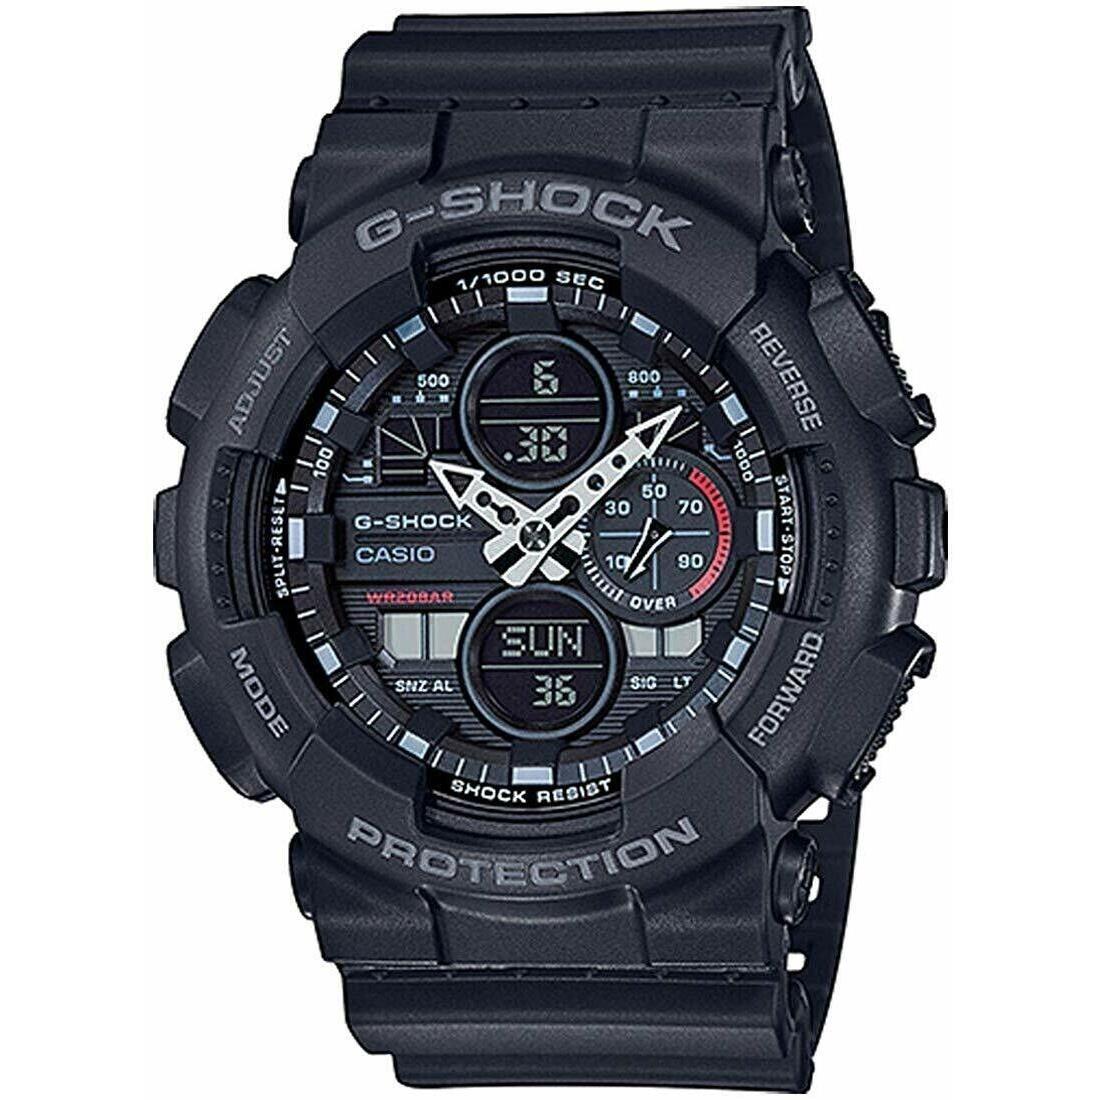 Casio G-shock GA-140-1A1 Black Analog Digital Mens Watch GA-140 200M WR